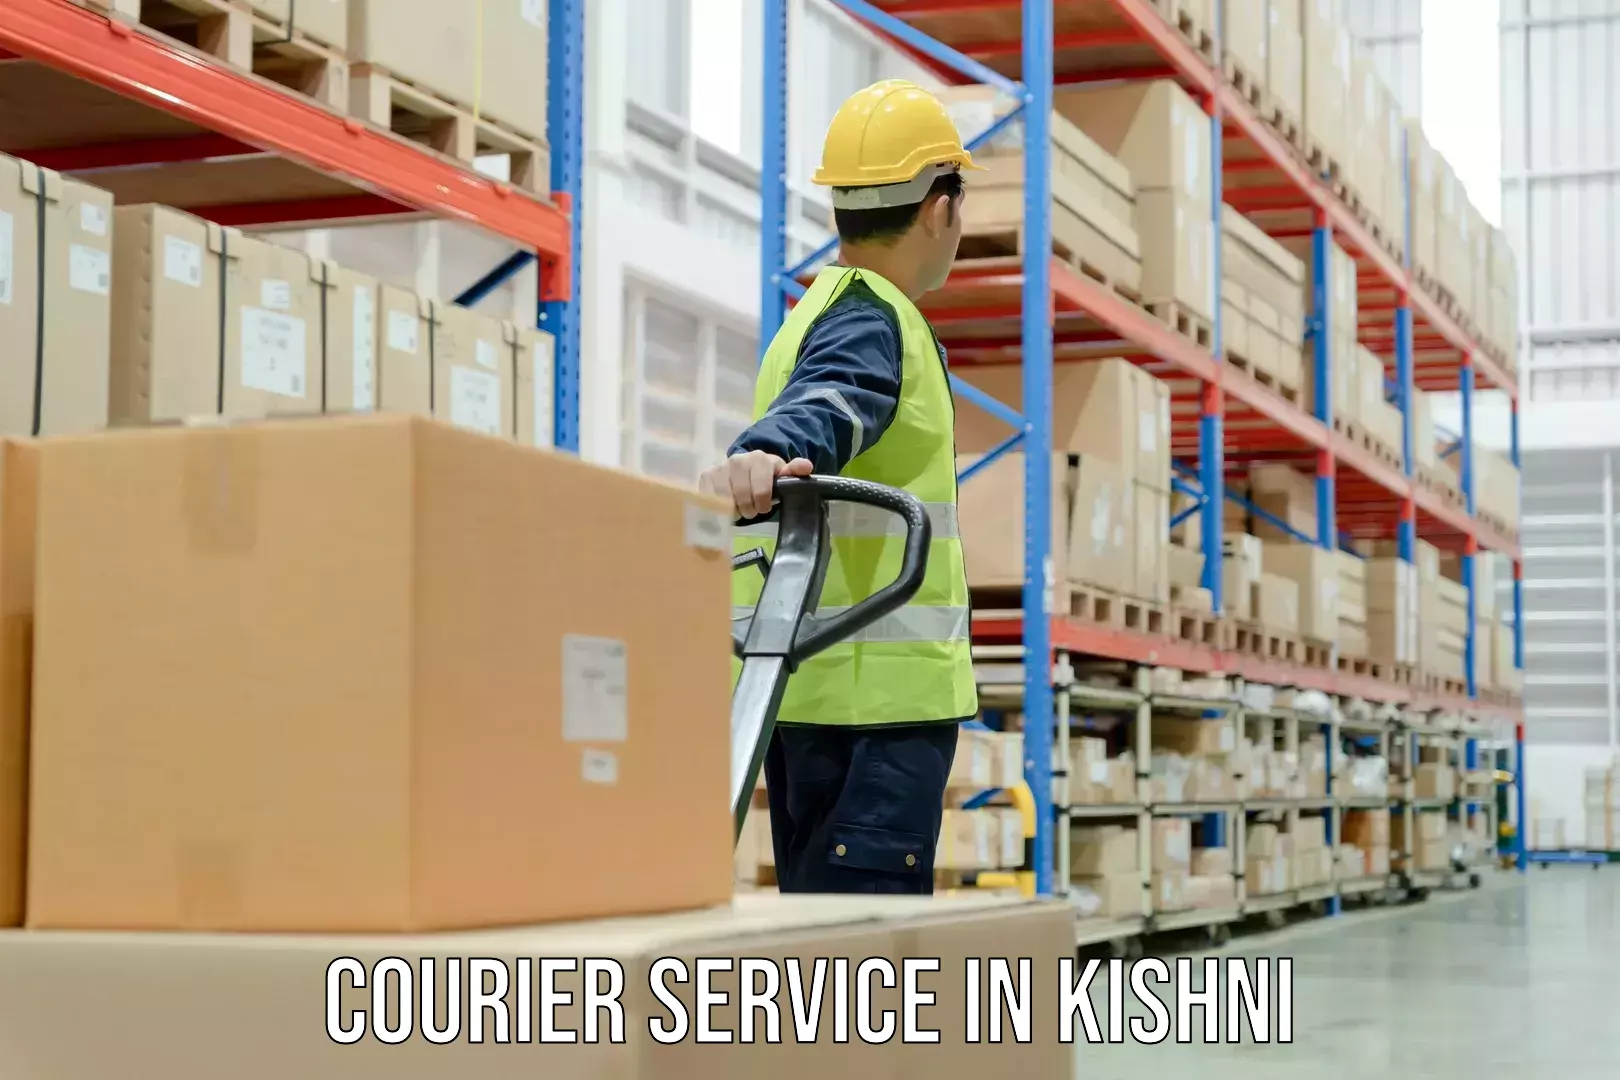 Delivery service partnership in Kishni